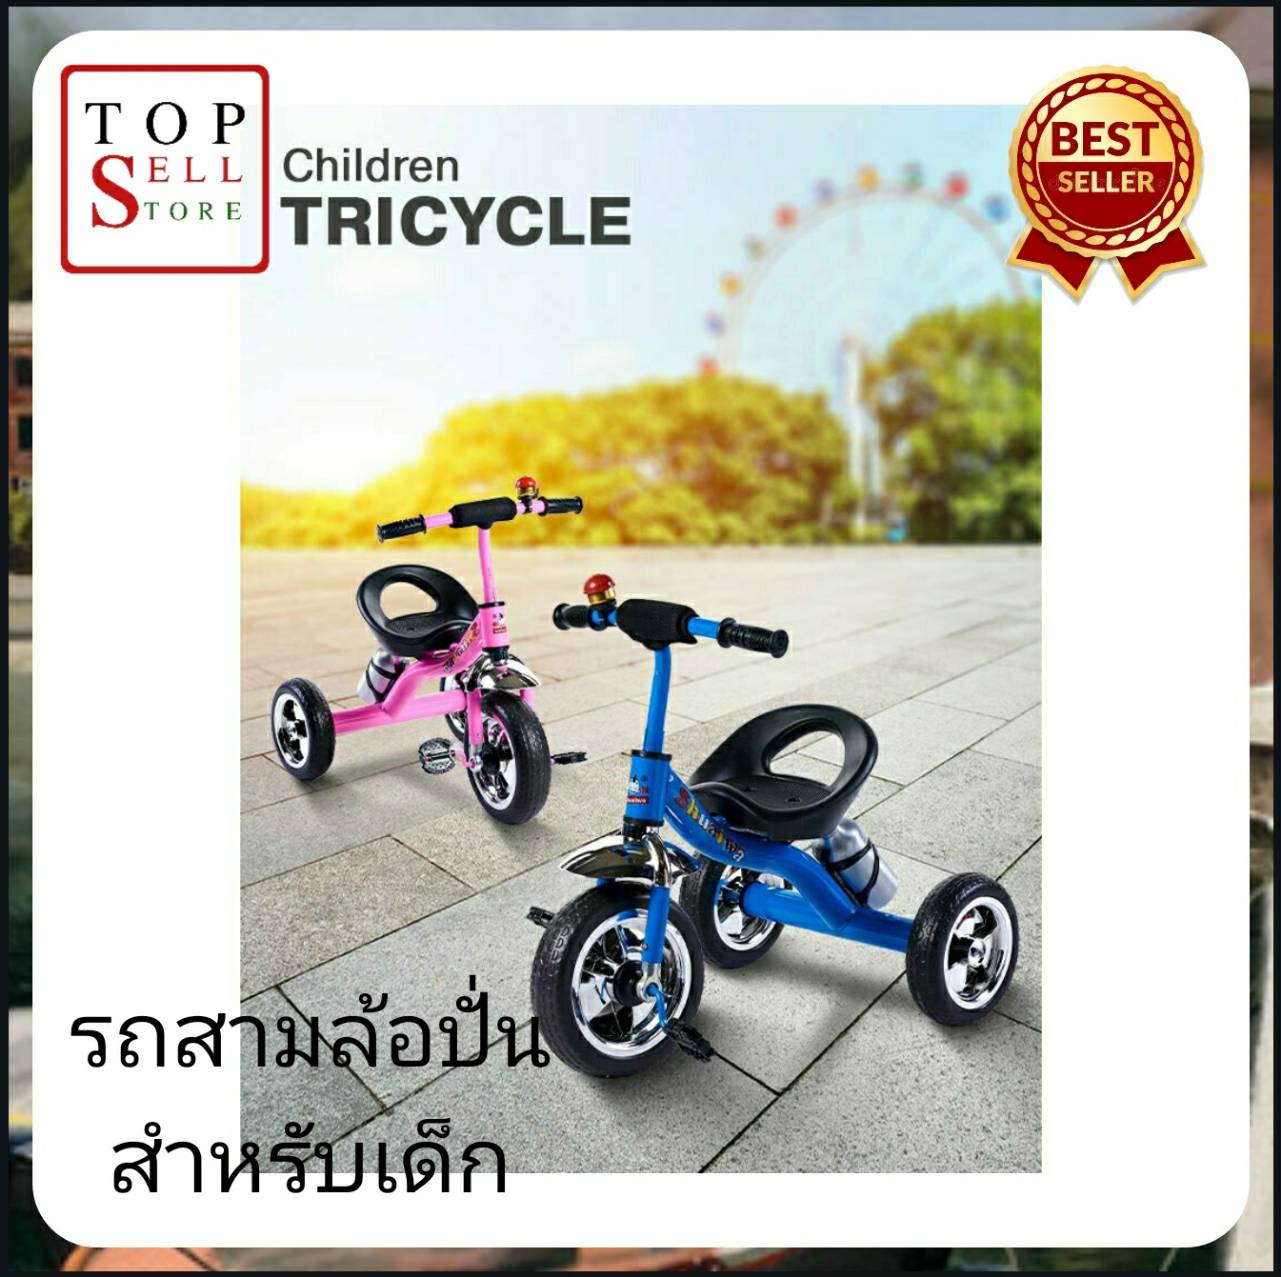 จักรยาน จักรยานสามล้อ จักรยานสามล้อเด็ก รถสามล้อปั่นสำหรับเด็ก Children Tricycle